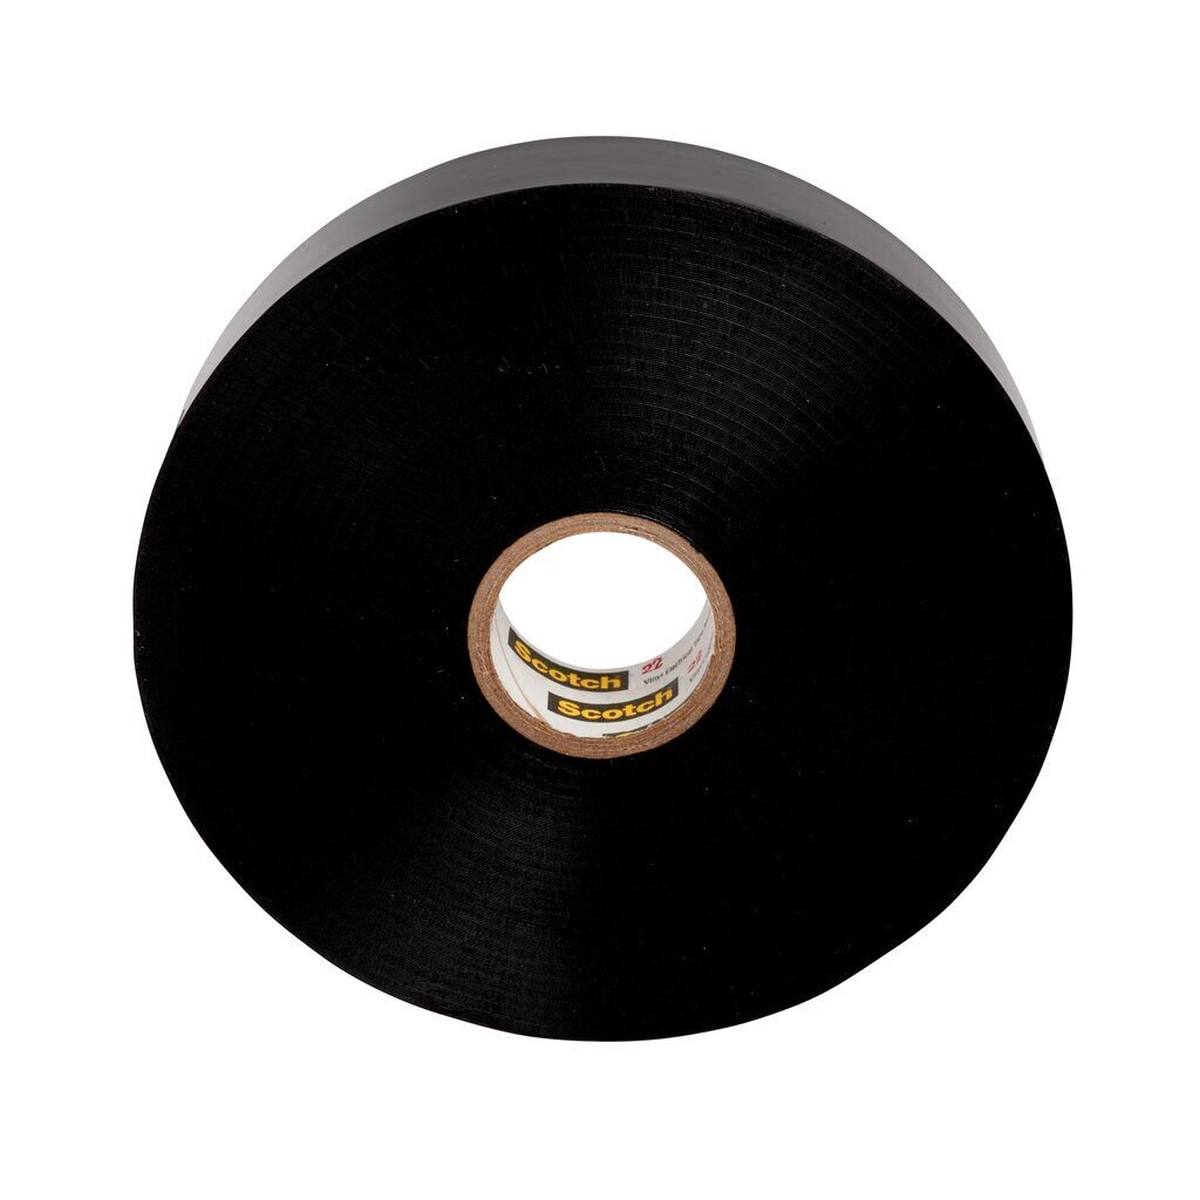 3M Scotch 22 Vinyl ruban électrique isolant, noir, 19 mm x 33 m, 0,25 mm